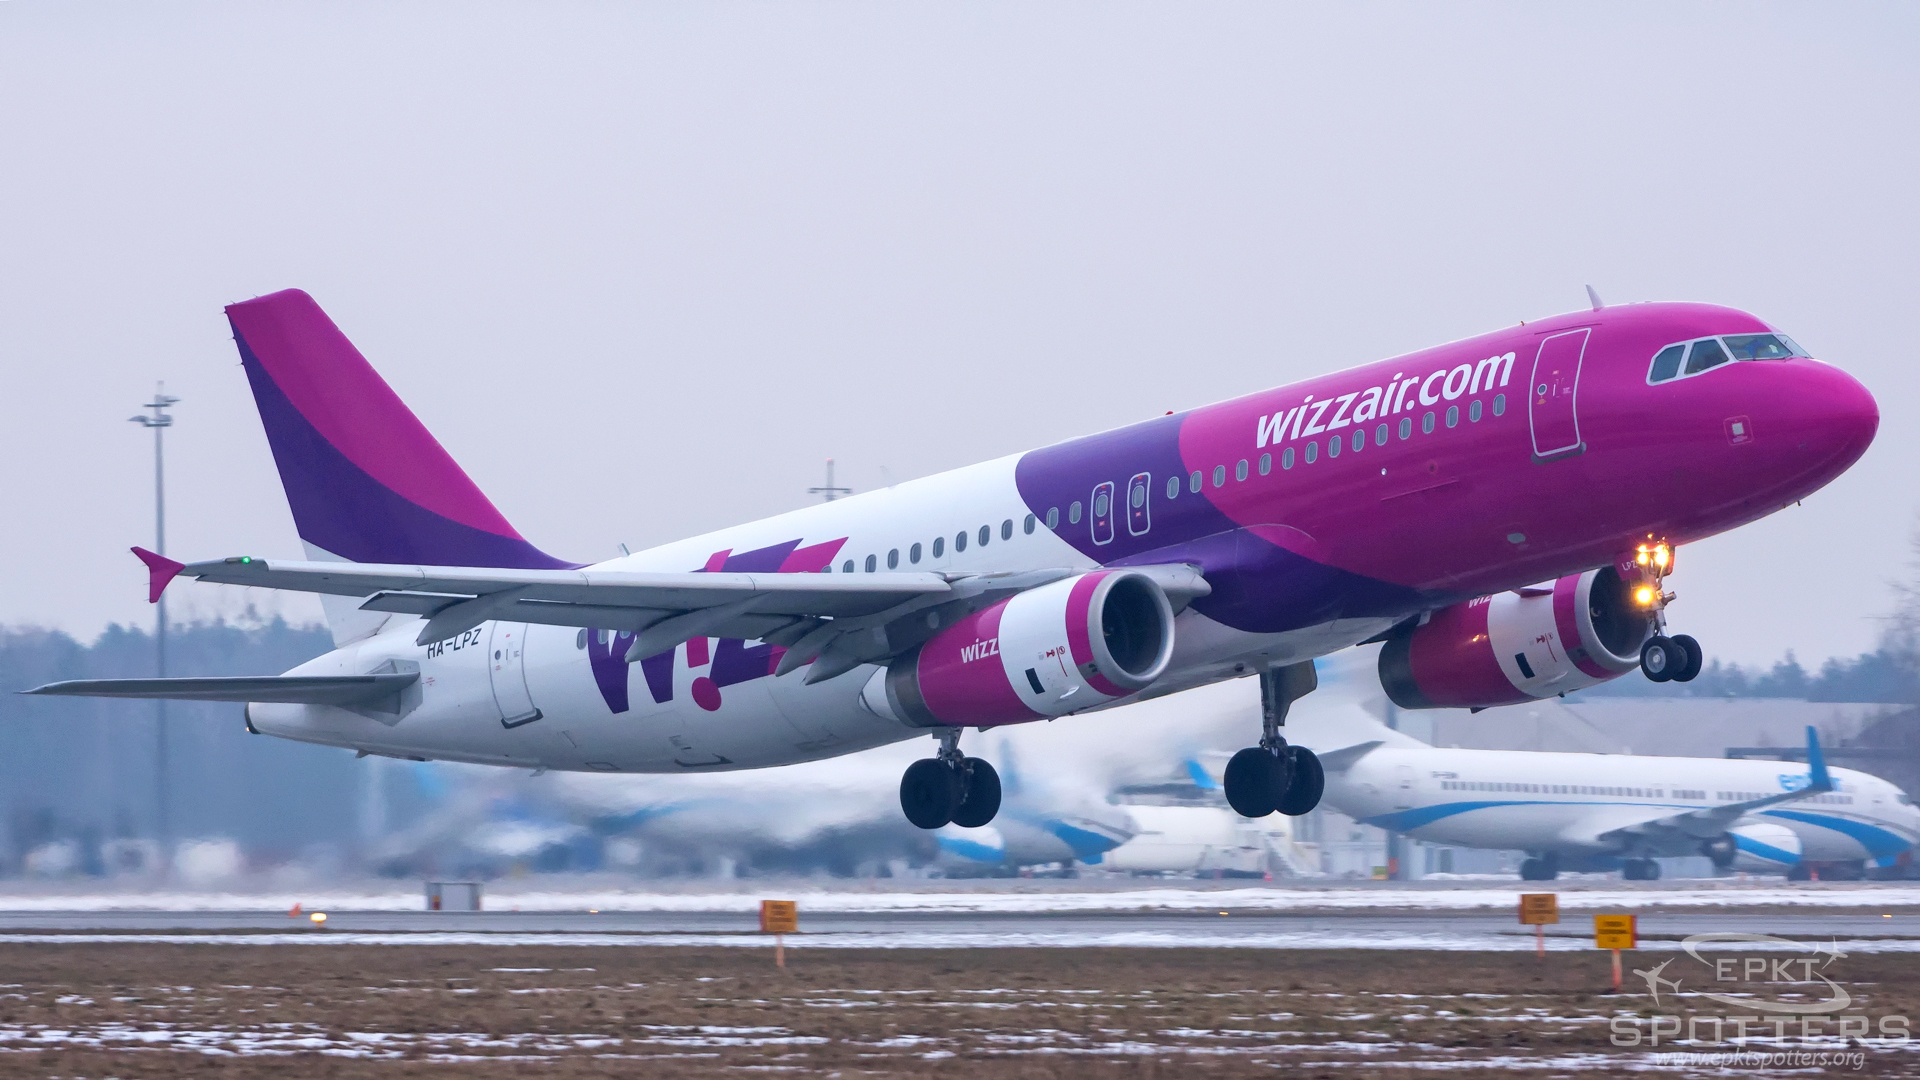 HA-LPZ - Airbus A320 -232 (Wizz Air) / Pyrzowice - Katowice Poland [EPKT/KTW]